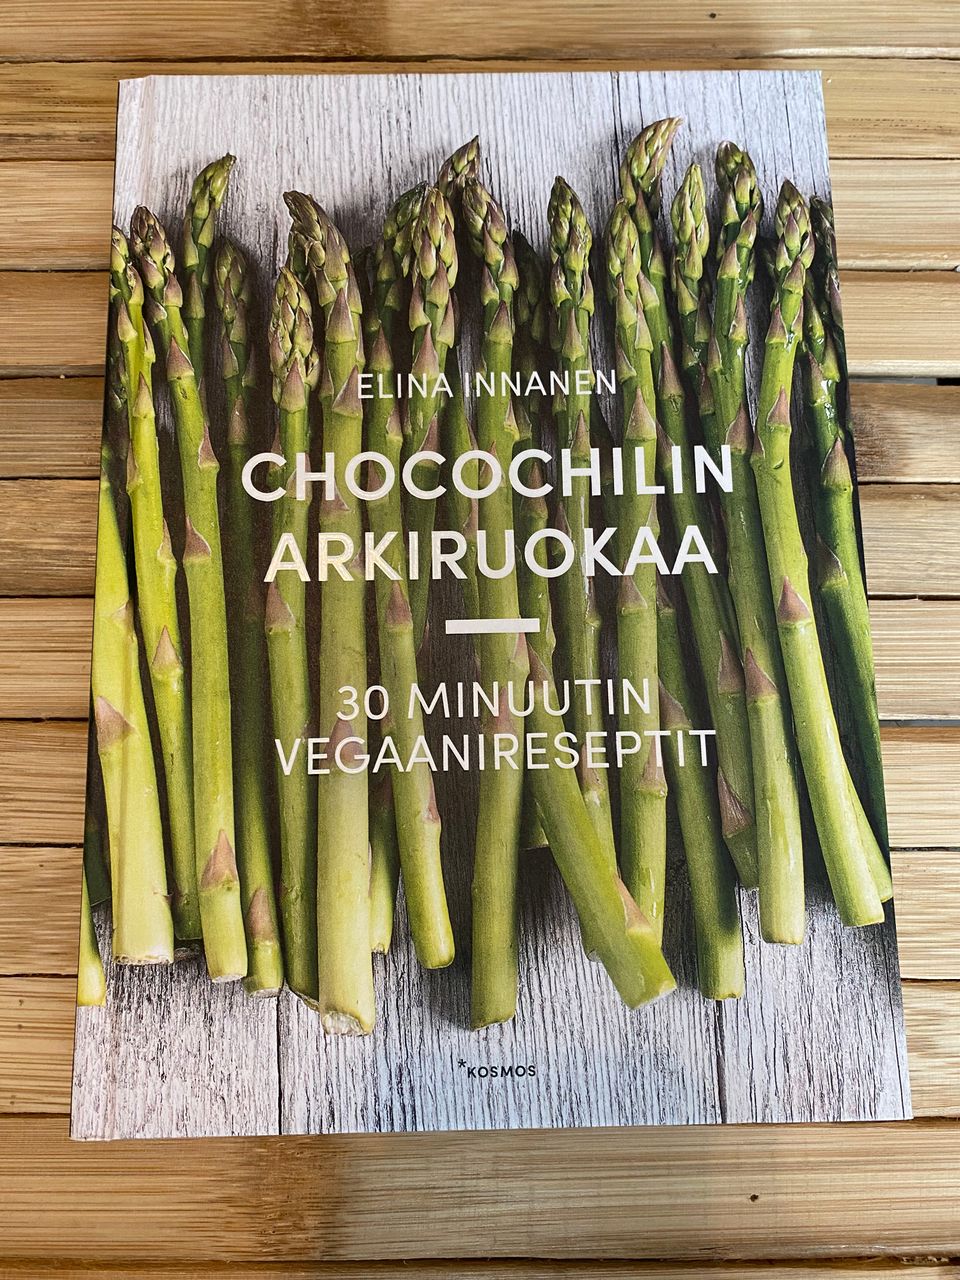 Chocochilin arkiruokaa - 30 minuutin vegaaniteseptit